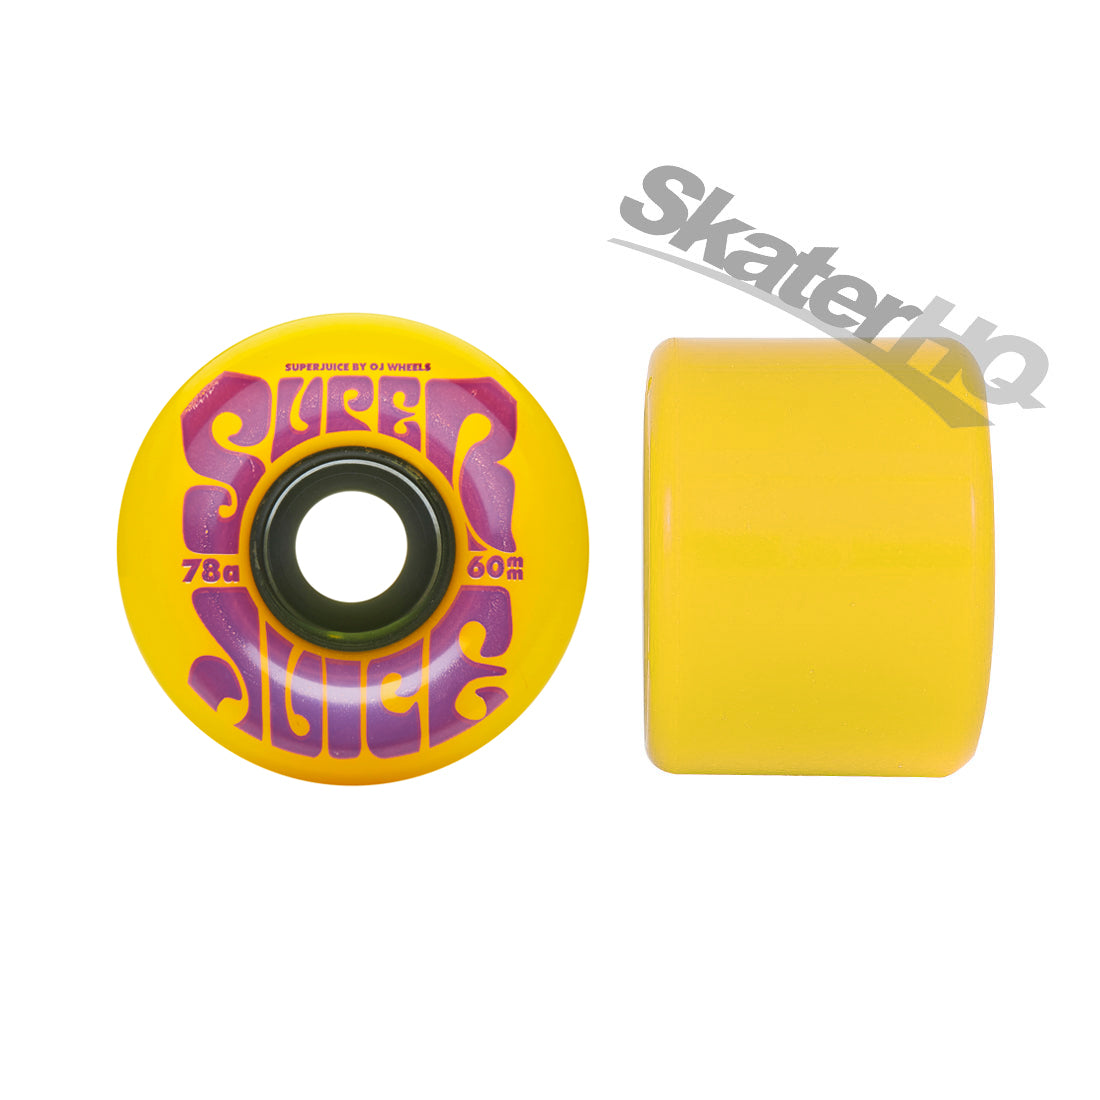 OJs Super Juice 60mm 78a 4pk - Yellow Skateboard Wheels